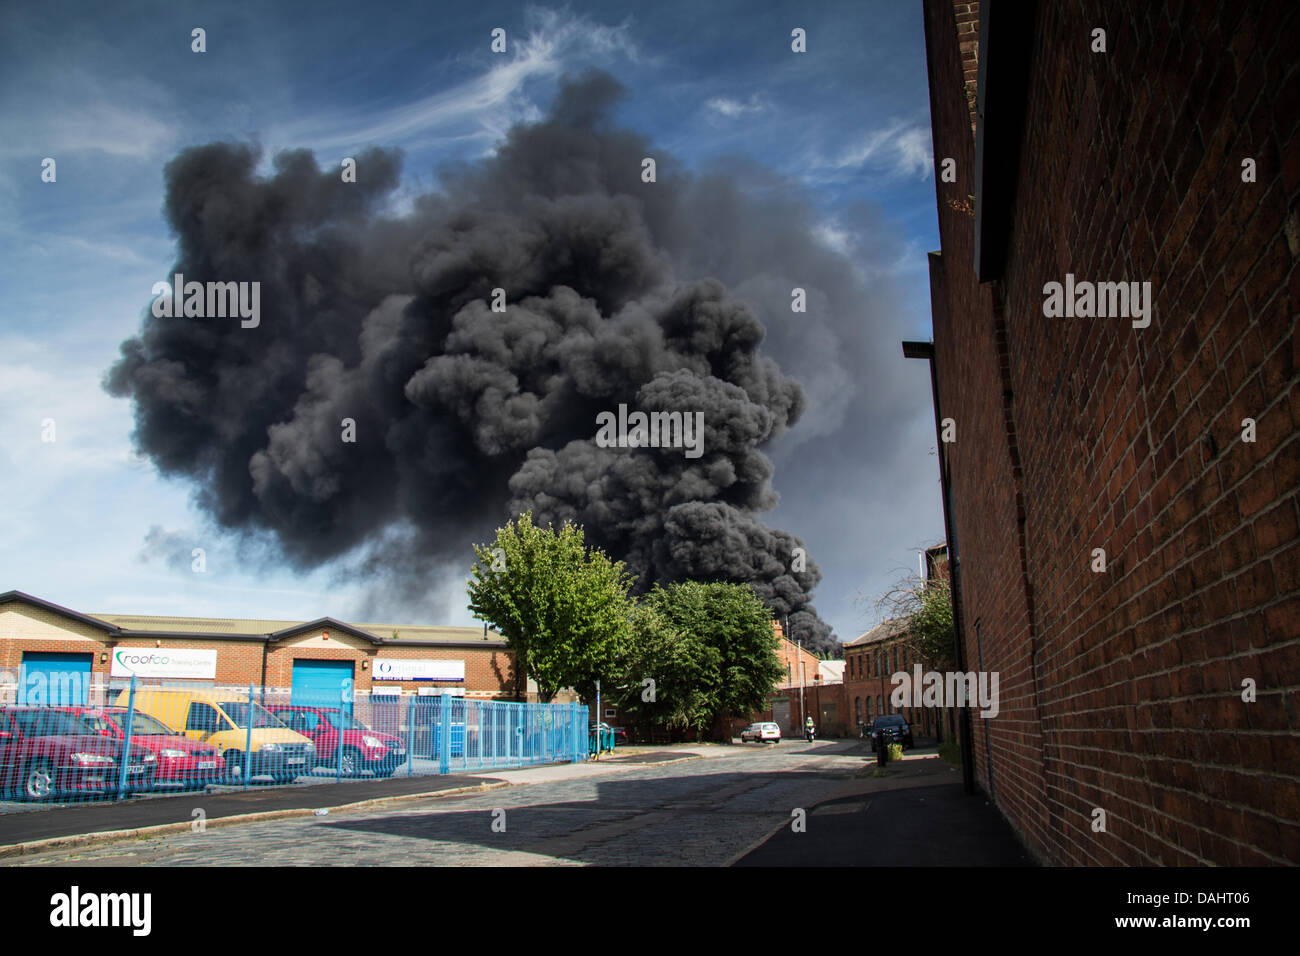 Sheffield, UK. 14. Juli 2013. Dicken schwarzen Rauch wogenden aus Recycling Zentrum Feuer auf Foley Straße in Sheffield Credit: Gary Bagshawe/Alamy Live News Stockfoto